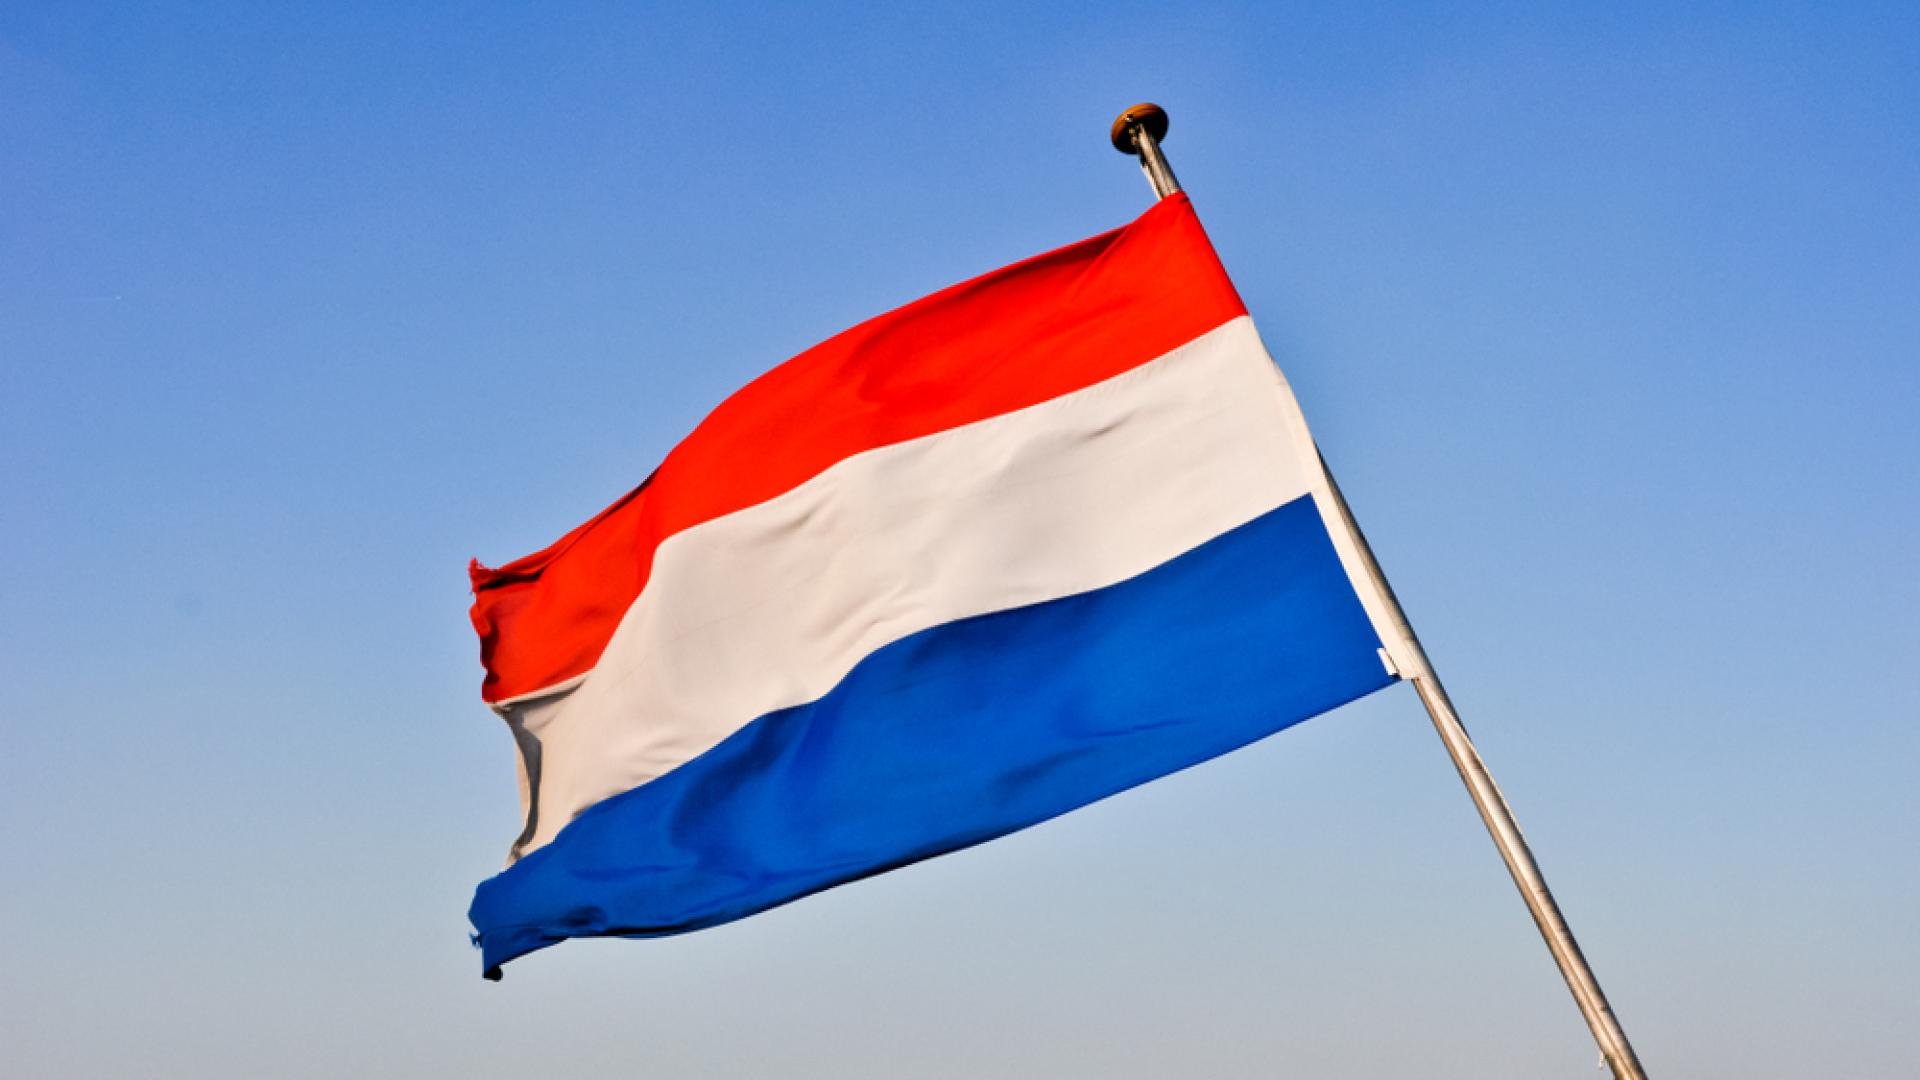 De Nederlandse vlag met op de achtergrond een blauwe lucht